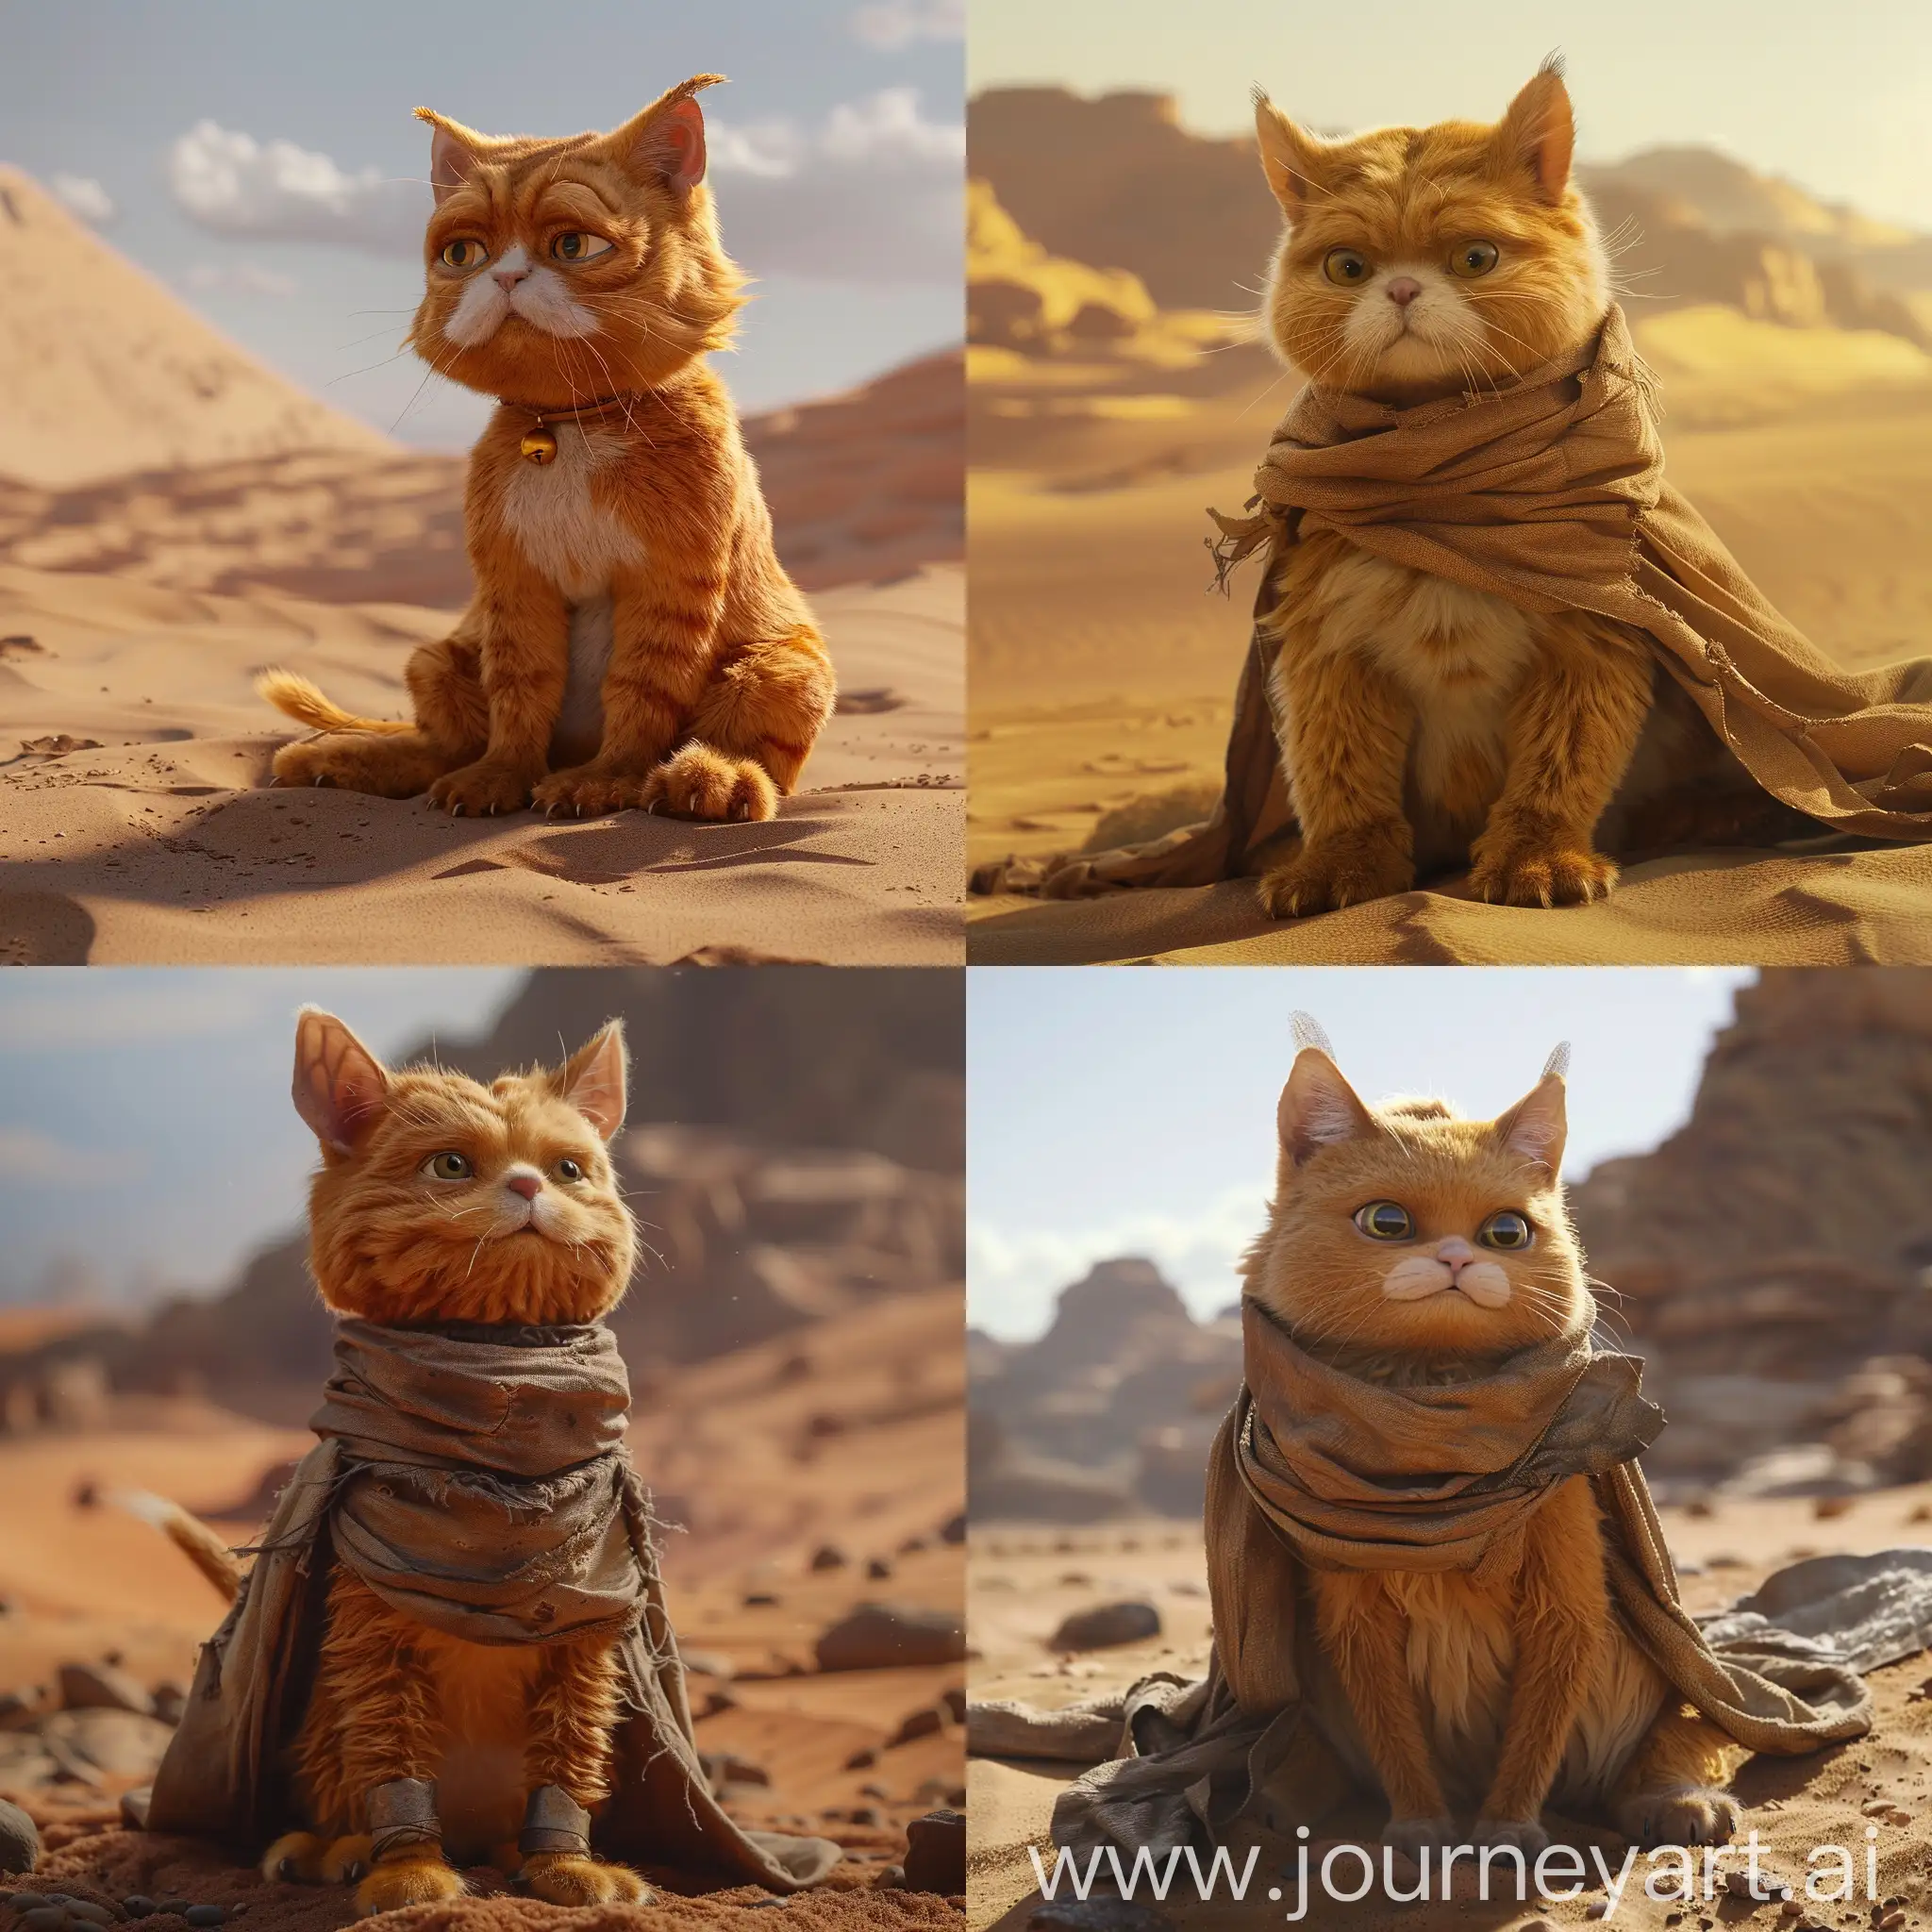 Garfield-Inspired-by-Dune-Movie-Galactic-Feline-Adventure